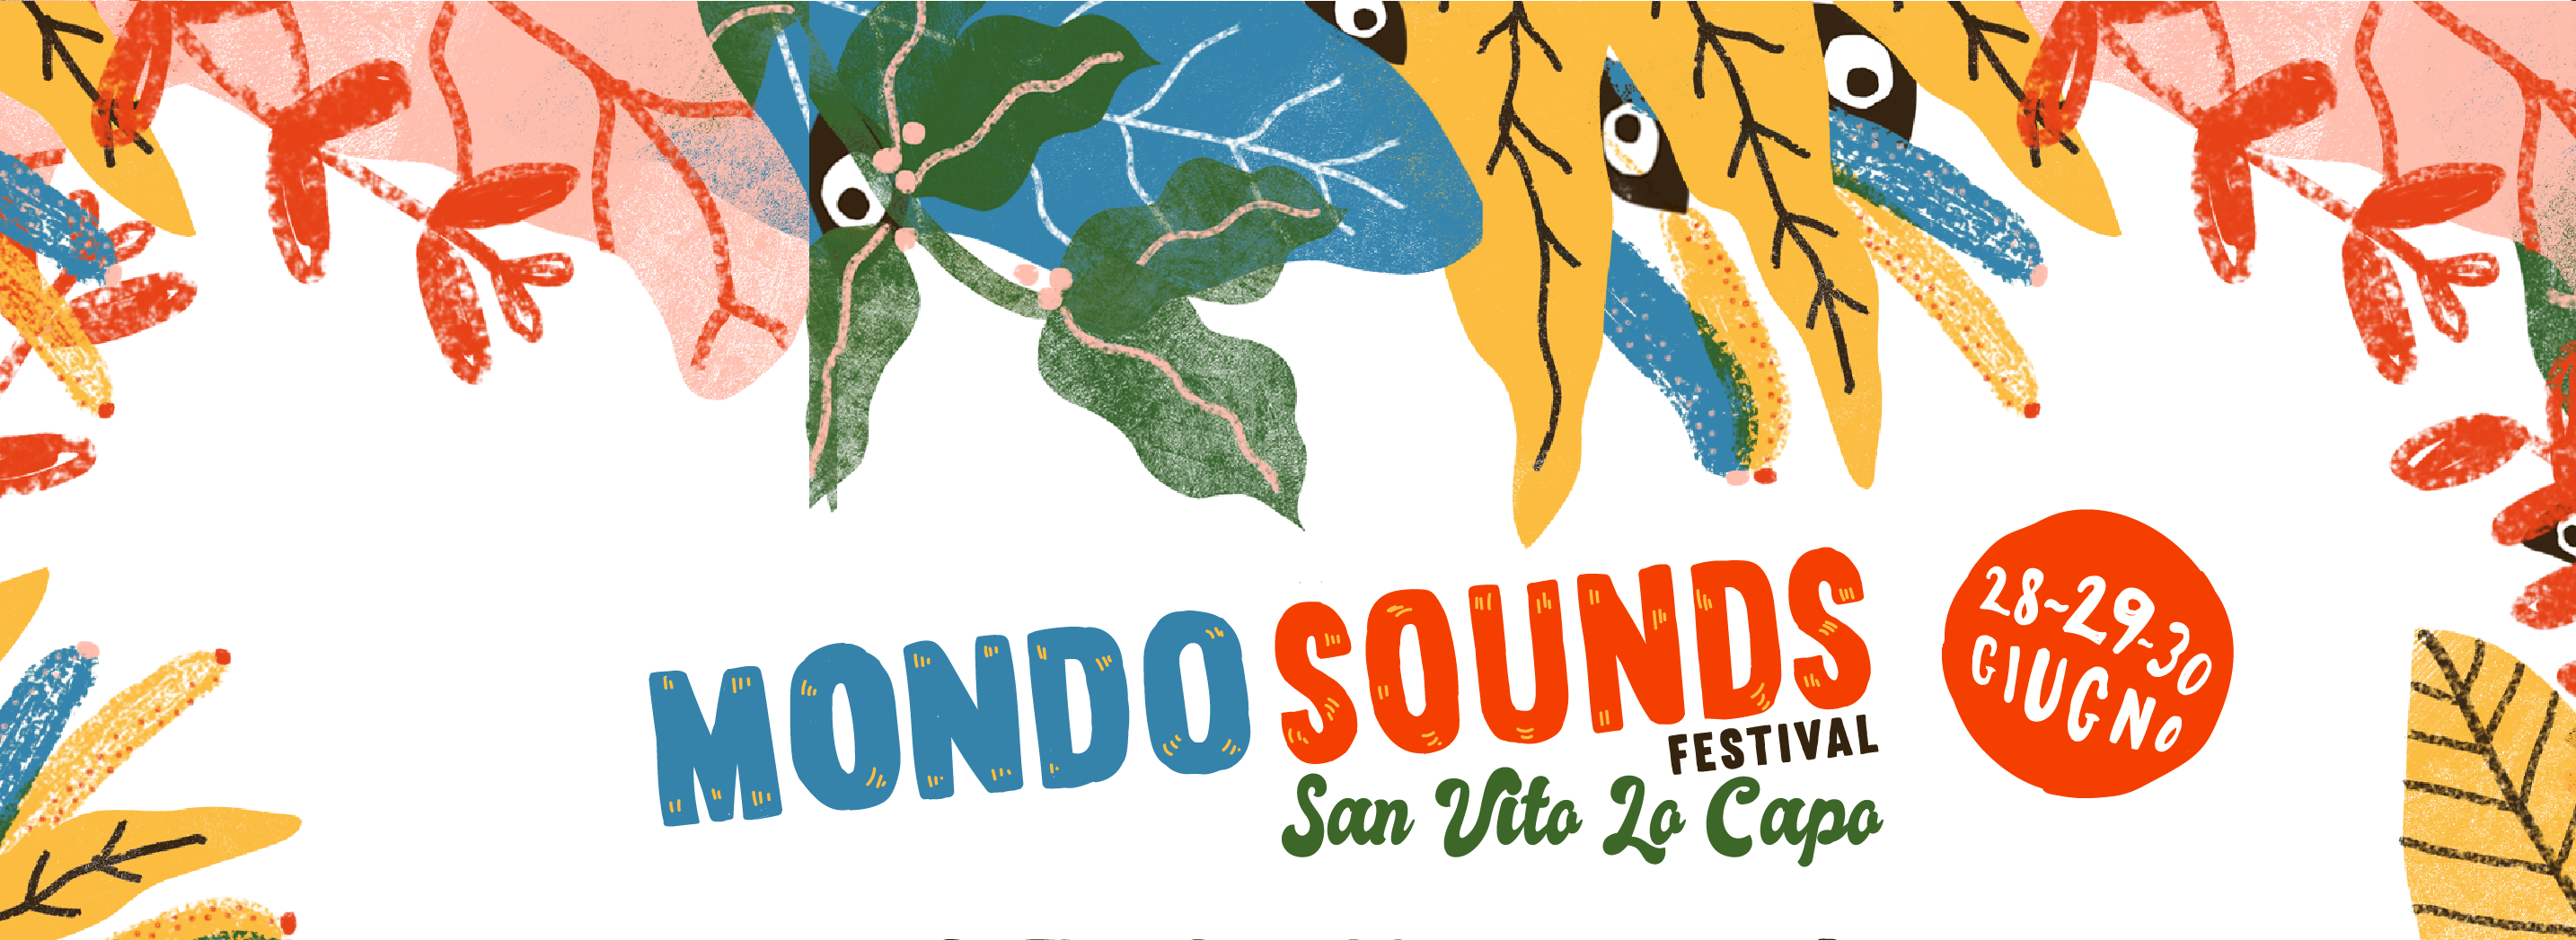 San Vito, dal 28 al 30 Giugno: Mondo Sounds Festival